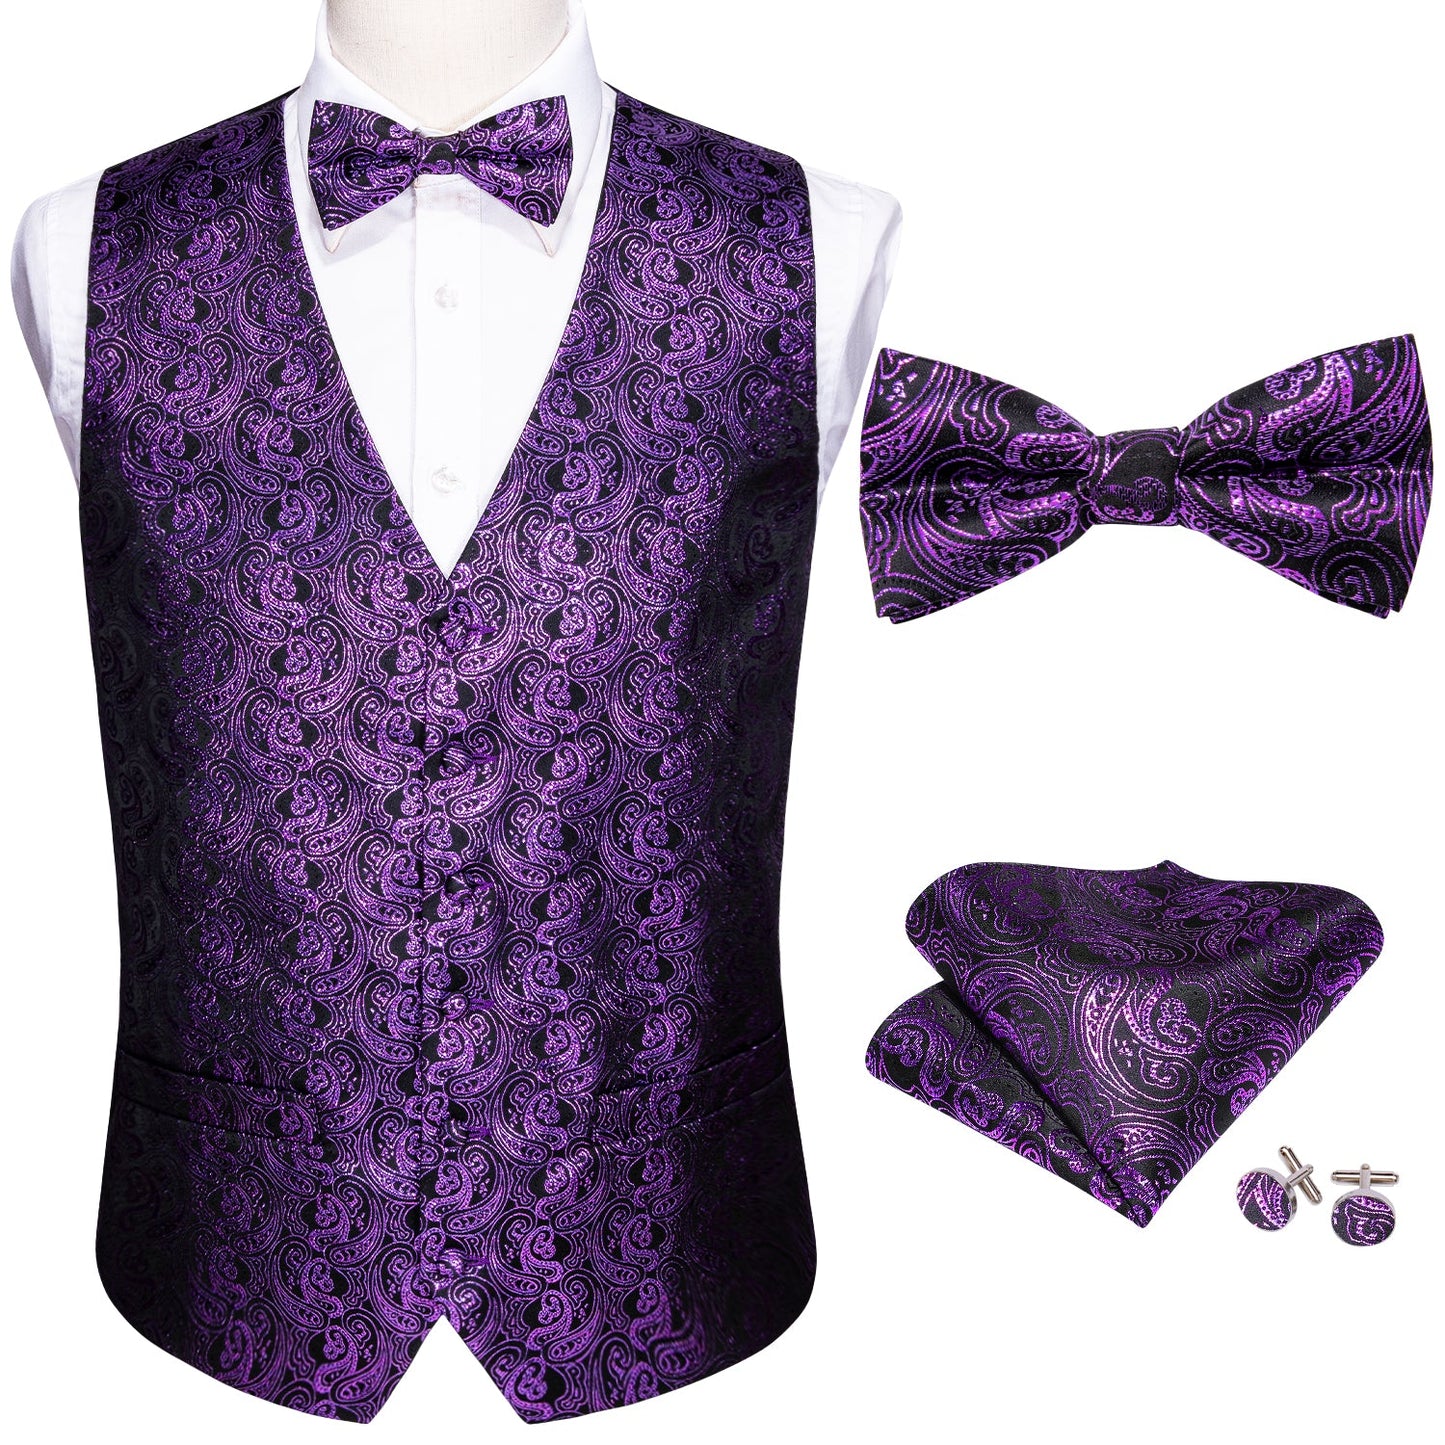 Designer Silky Waistcoat Shiny Novelty Vest Bowtie Mini Paisley Grape